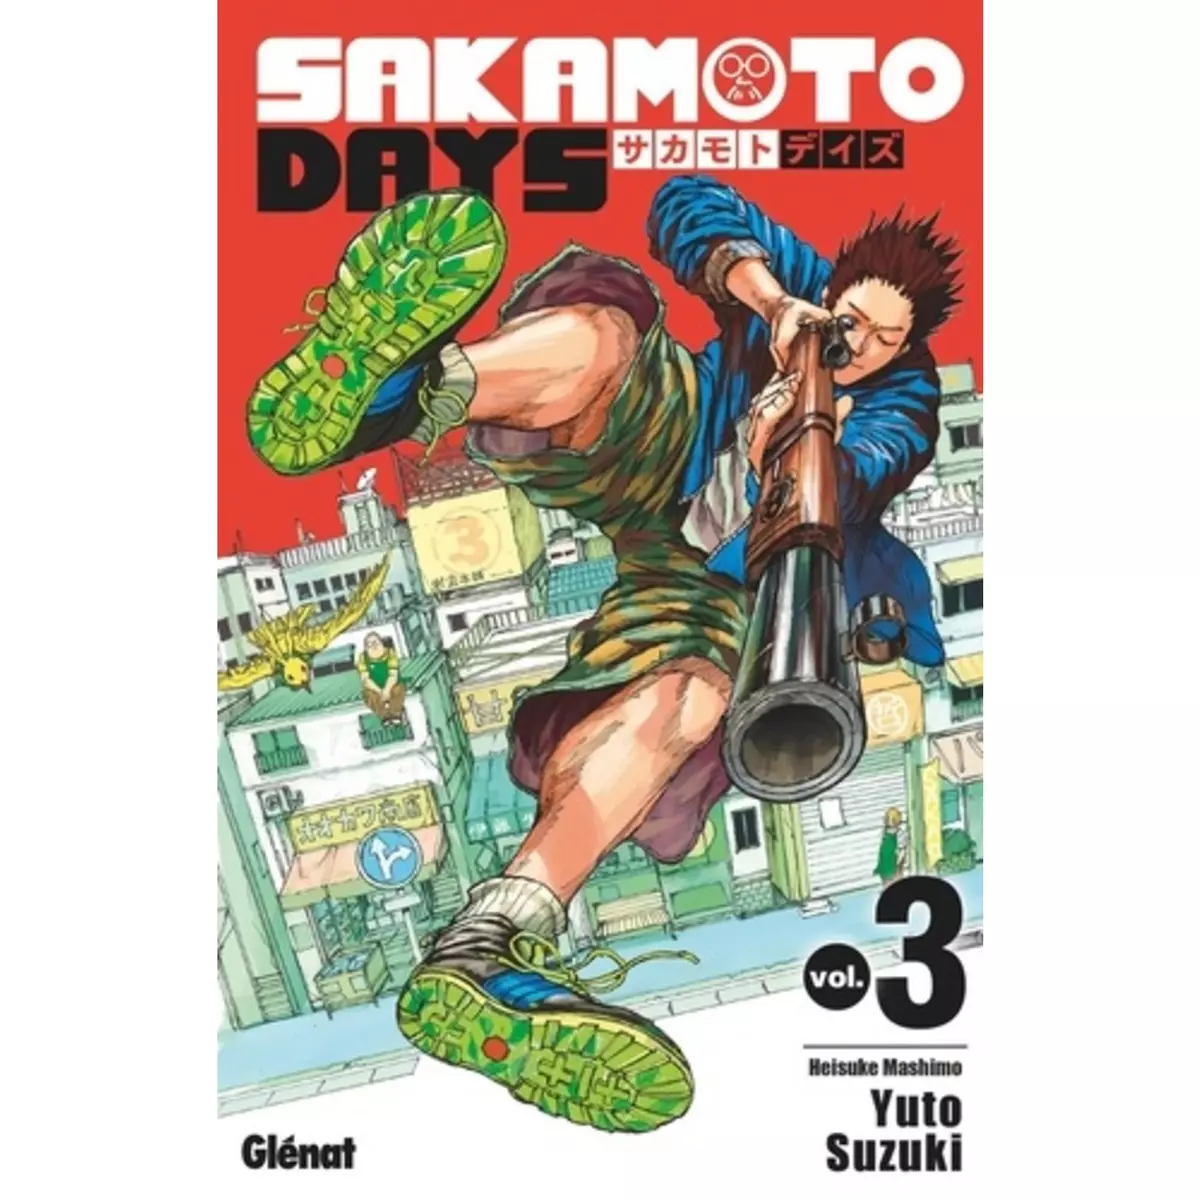  SAKAMOTO DAYS TOME 3 : HEISUKE MASHIMO, Suzuki Yuto